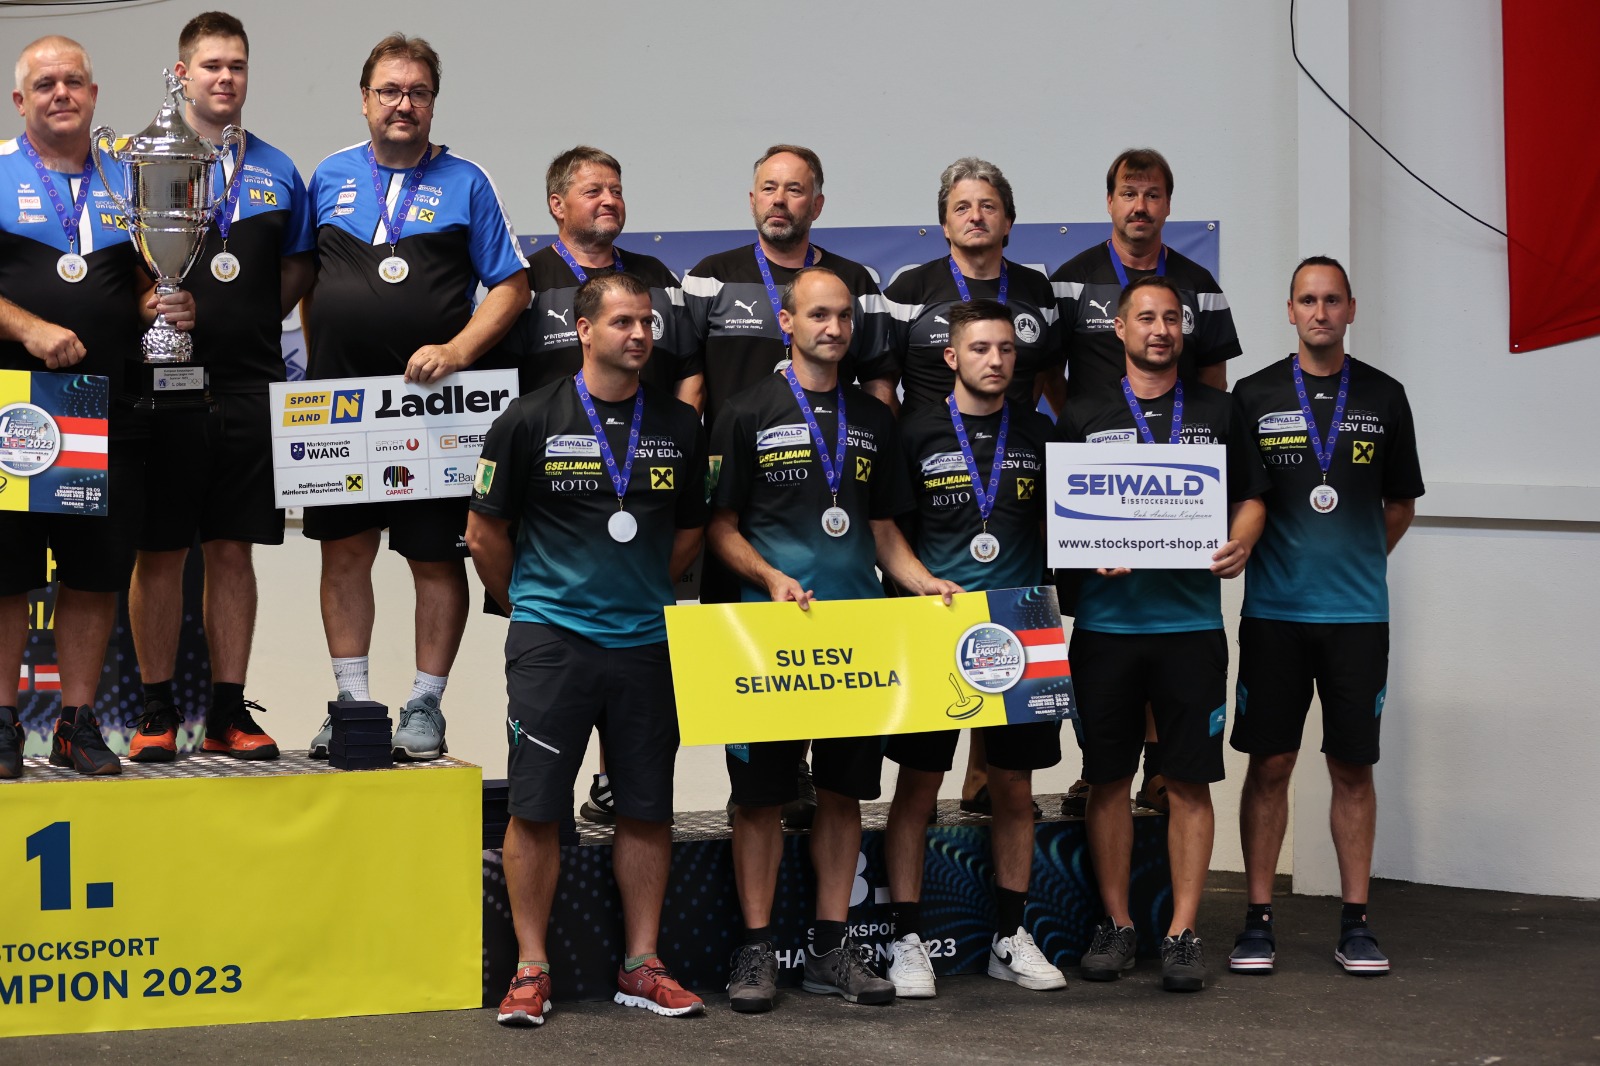 Offene Wiener Landesmeisterschaft 2023 - Vienna Open Championship 2023 -  Smoothcomp